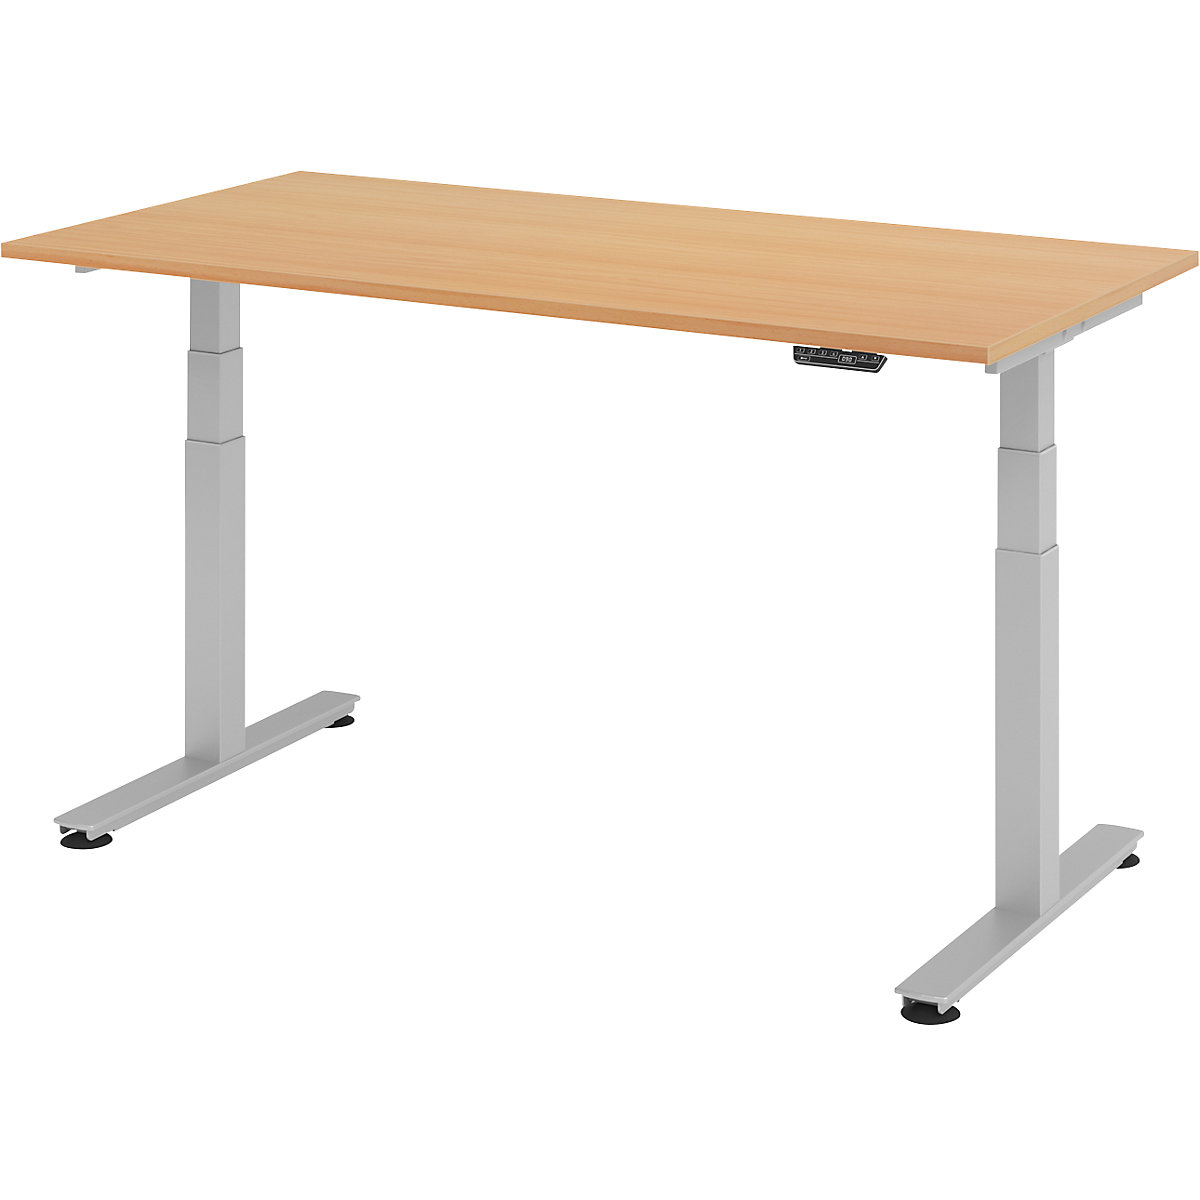 Psací stůl pro práci vestoje, s elektrickým přestavováním výšky UPLINER-2.0, podstavec s nohami ve tvaru T, šířka 1200 mm, bukový dekor-11